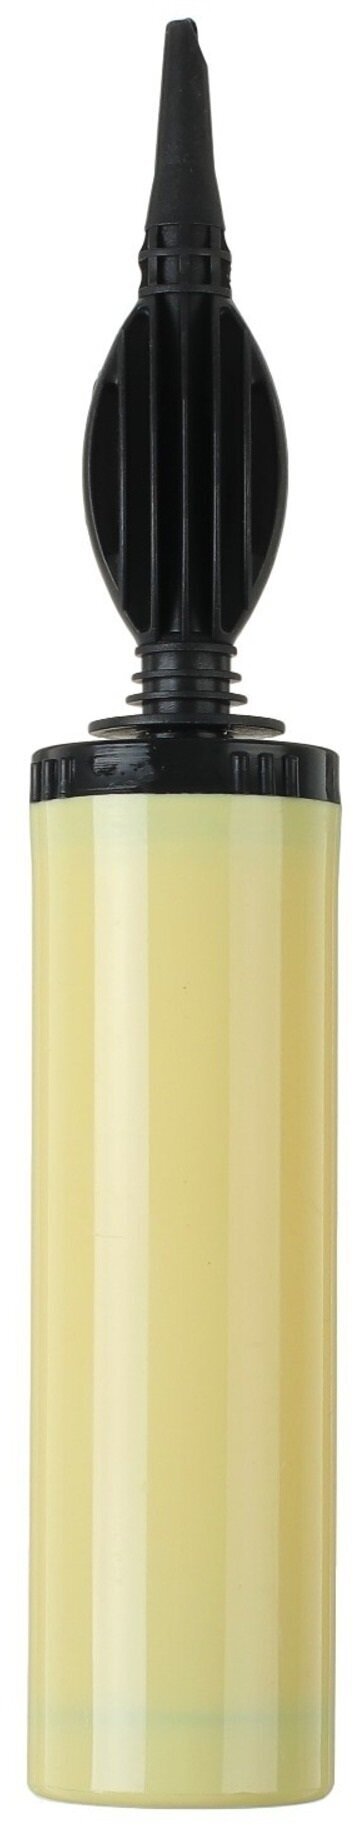 Насос для латексных/фольгированных шаров, 28 см, цвет жёлтый